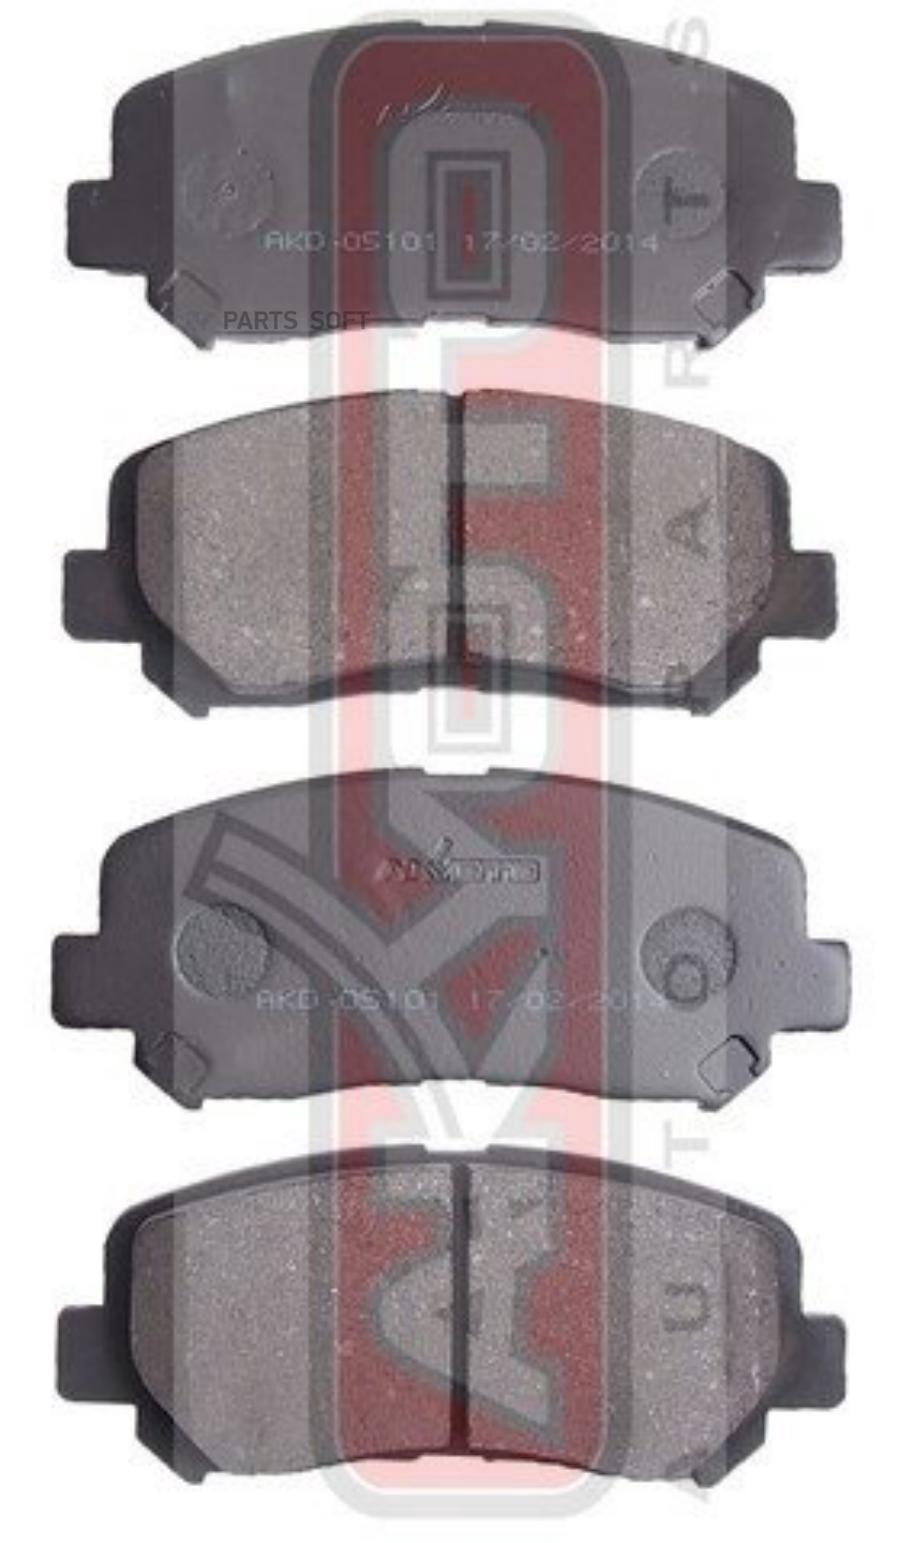 Тормозные колодки Akyoto передние дисковые AKD05101